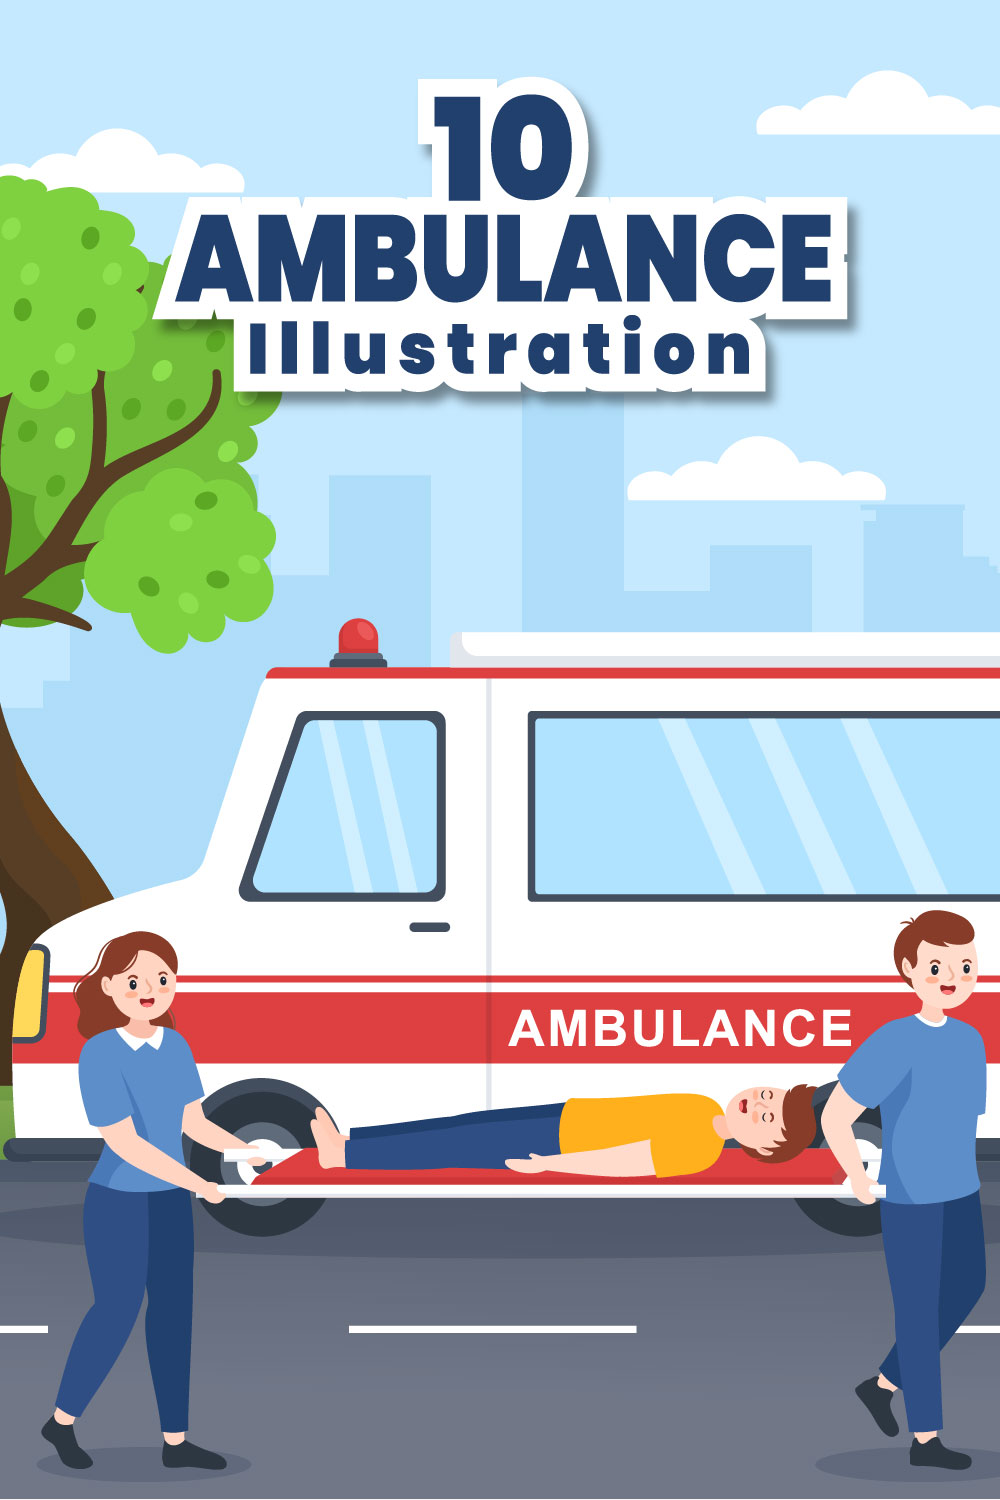 Medical Vehicle Ambulance Car Illustration pinterest image.